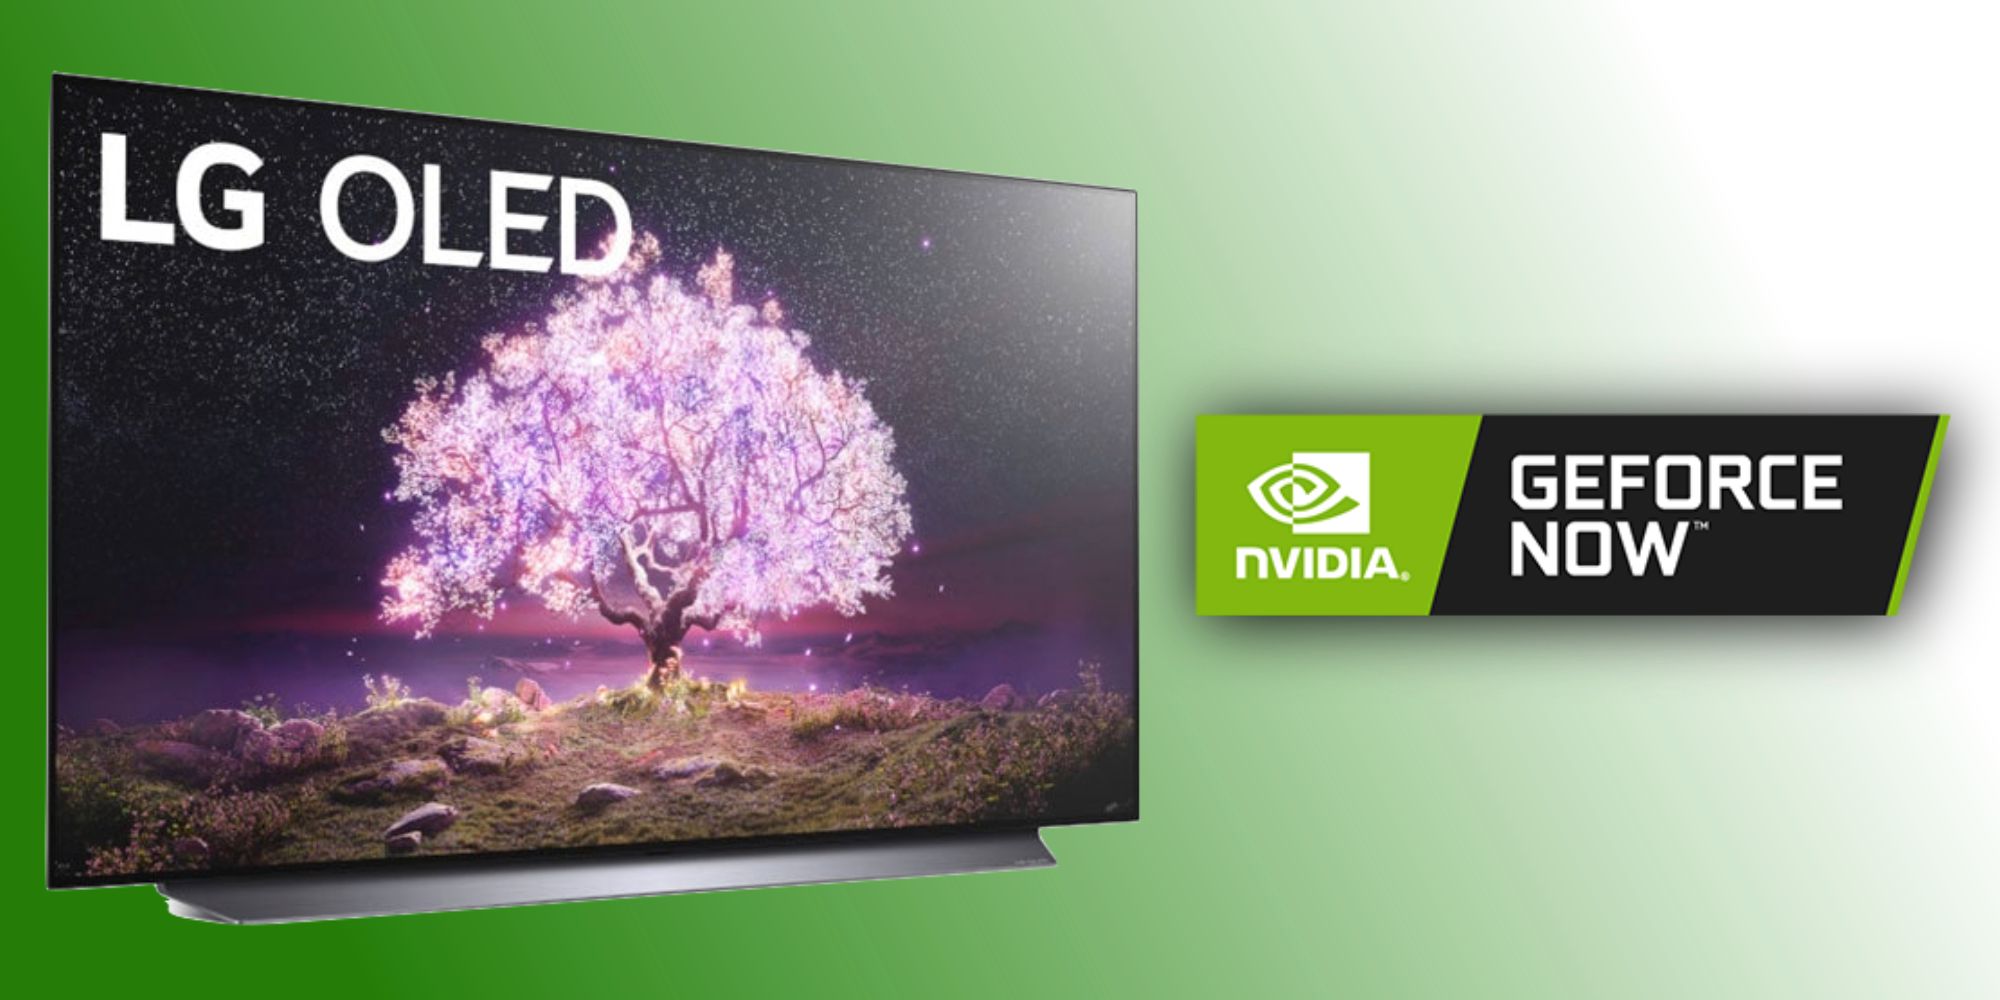 Cómo jugar Nvidia GeForce ahora en un televisor LG: todo lo que necesita saber